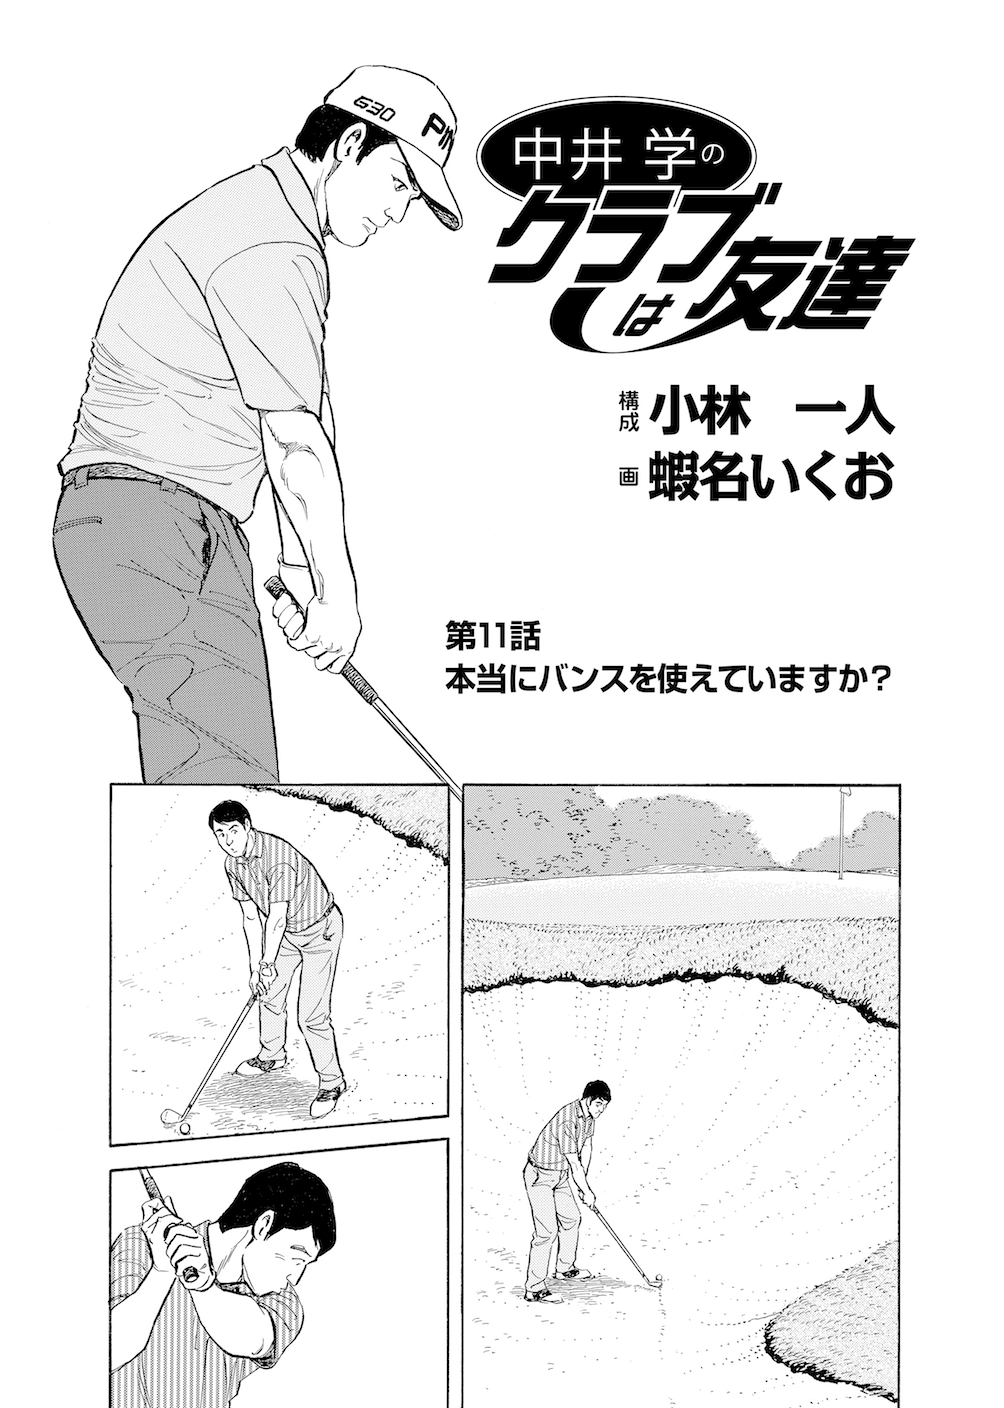 第11話 本当にバンスを使えていますか 無料で読めるゴルフレッスンコミックweb 日本文芸社